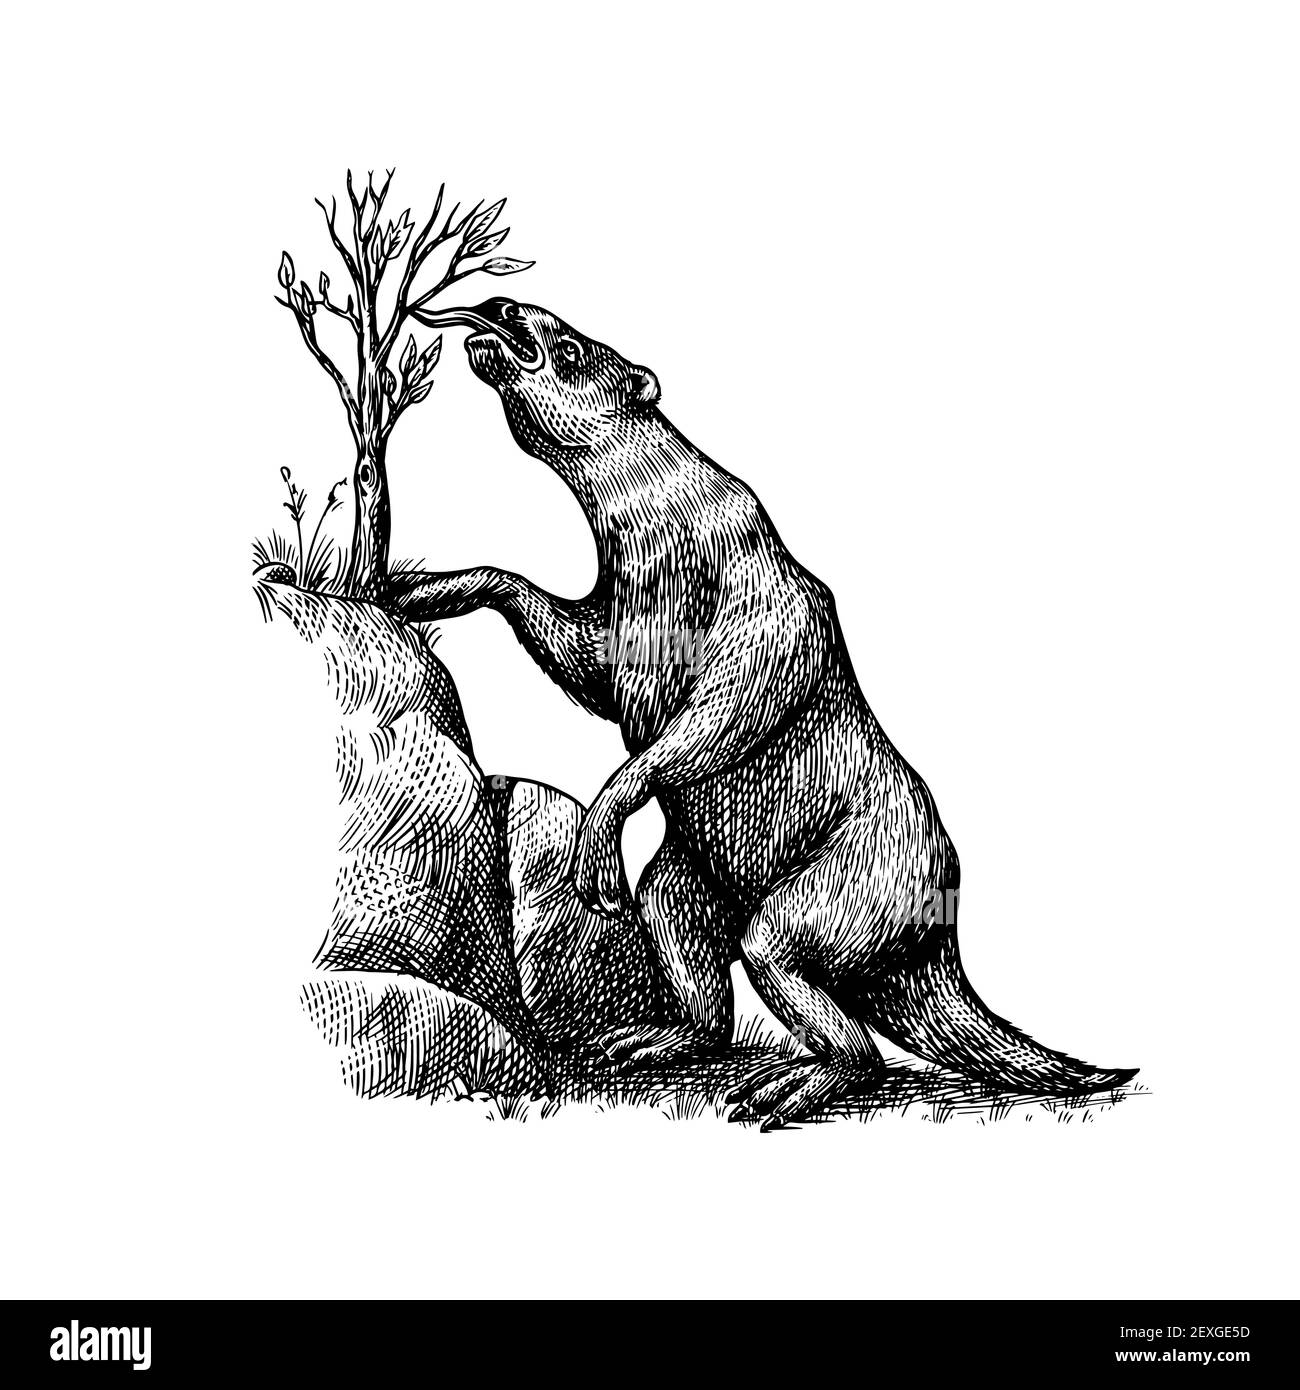 Le sloth moulu ou Megatheriidae. Mammifères préhistoriques. Animal éteint. Illustration rétro vintage. Style Doodle. Esquisse gravée dessinée à la main Illustration de Vecteur